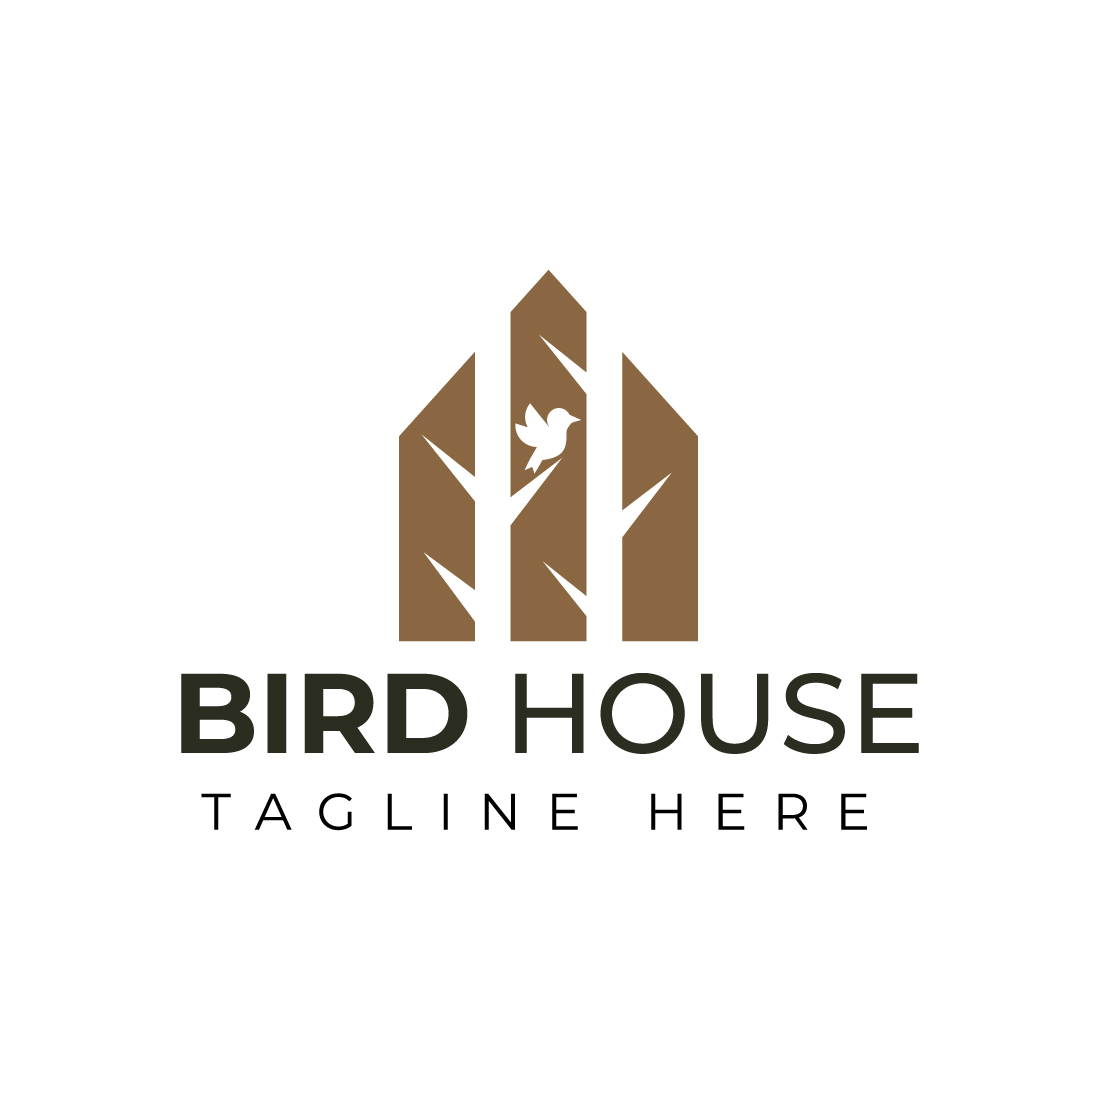 Bird House Design Logo Template cover image.